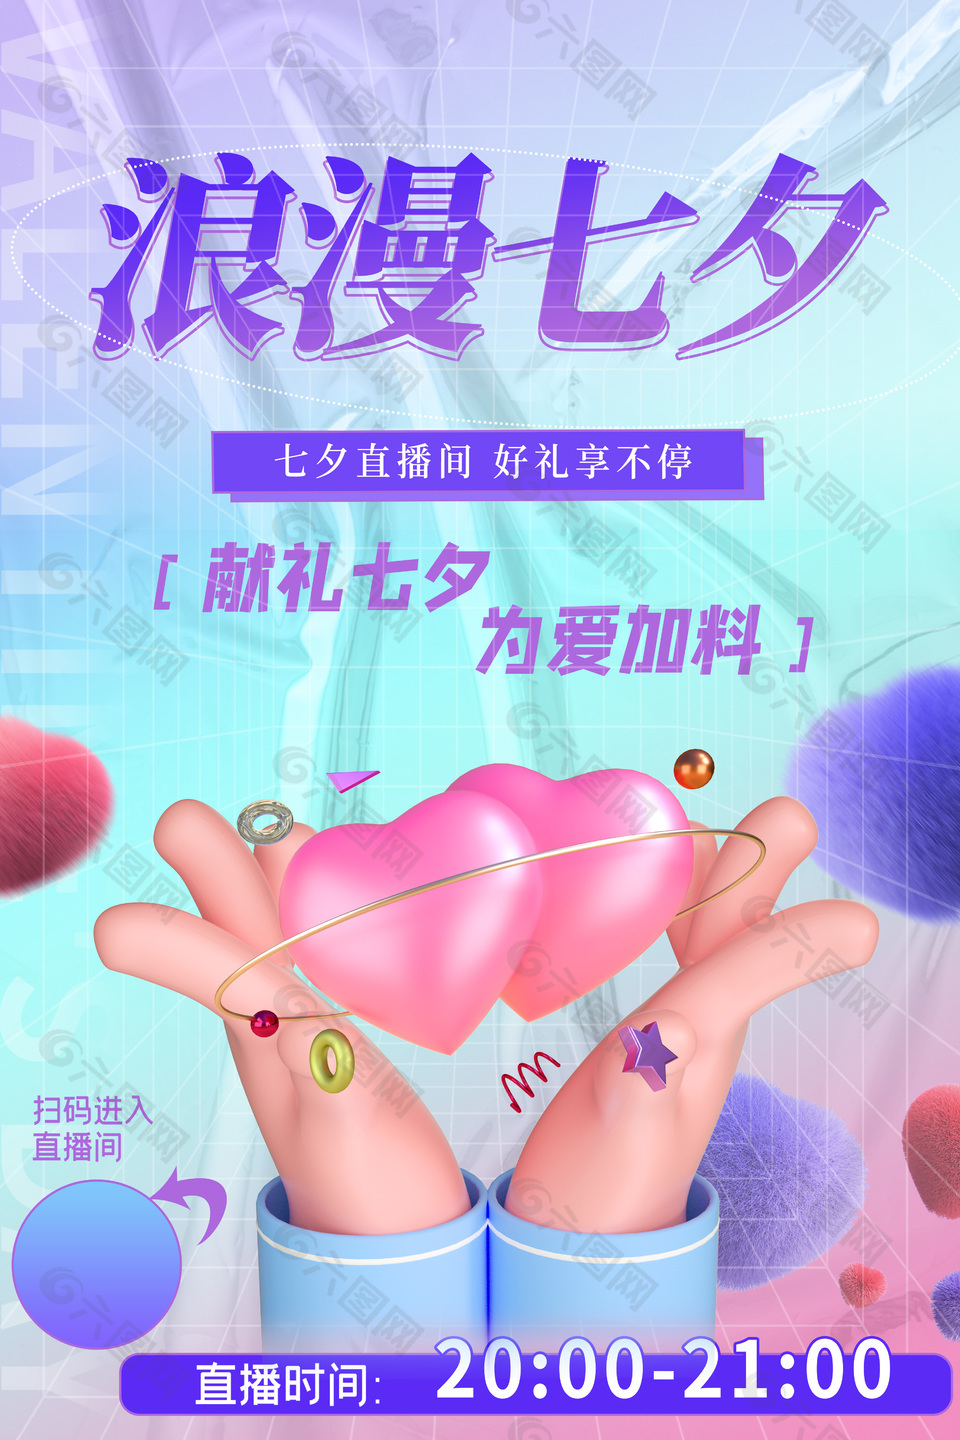 创意3d元素浪漫七夕直播宣传海报下载